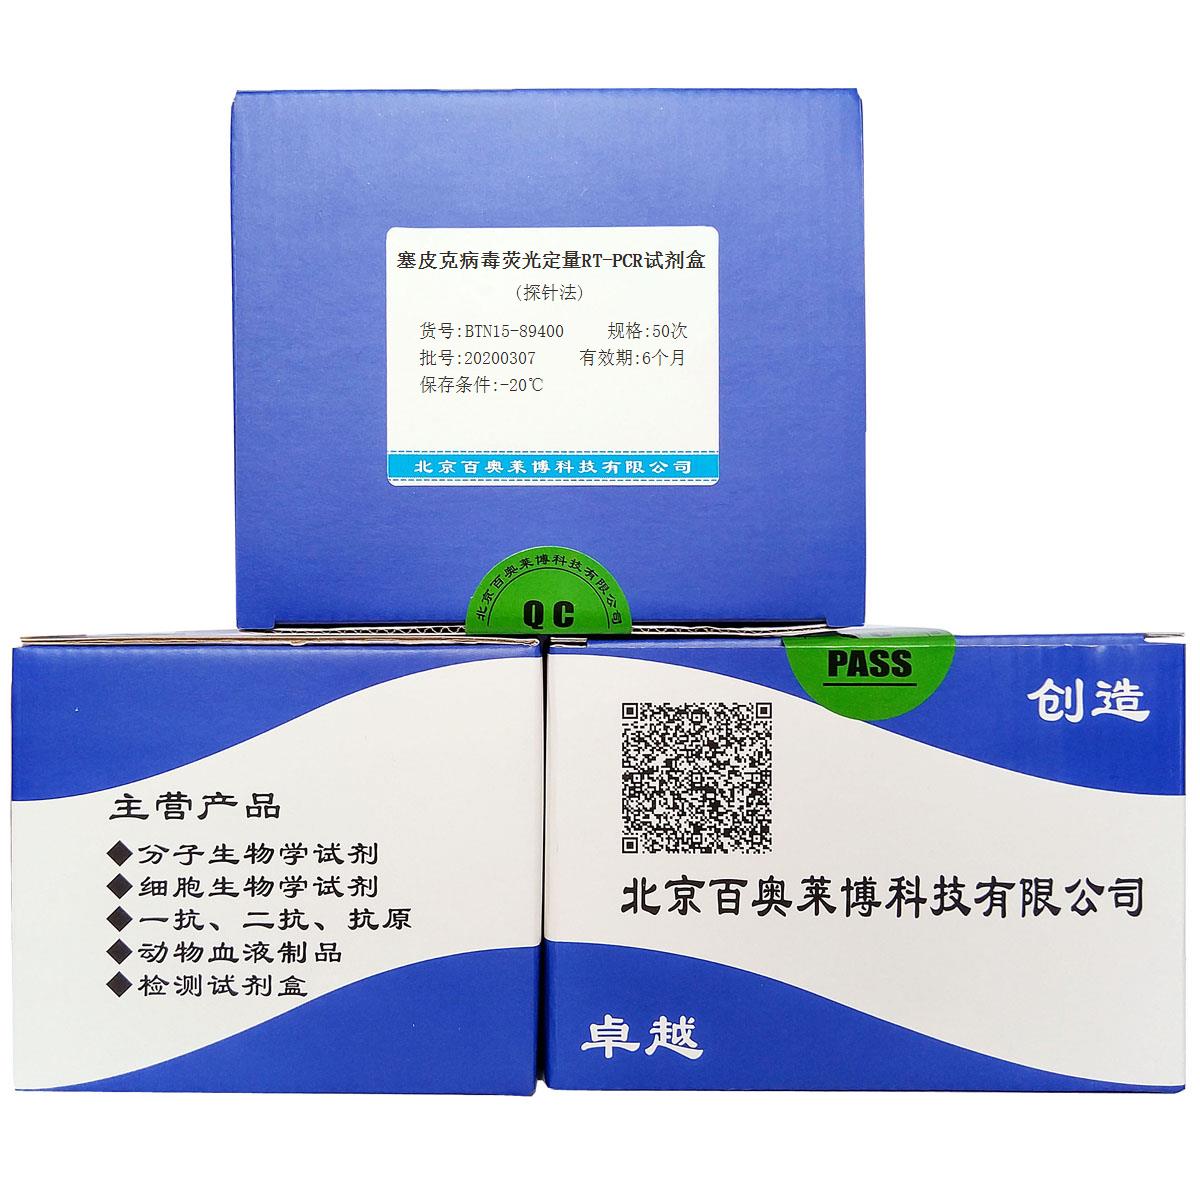 塞皮克病毒荧光定量RT-PCR试剂盒(探针法)